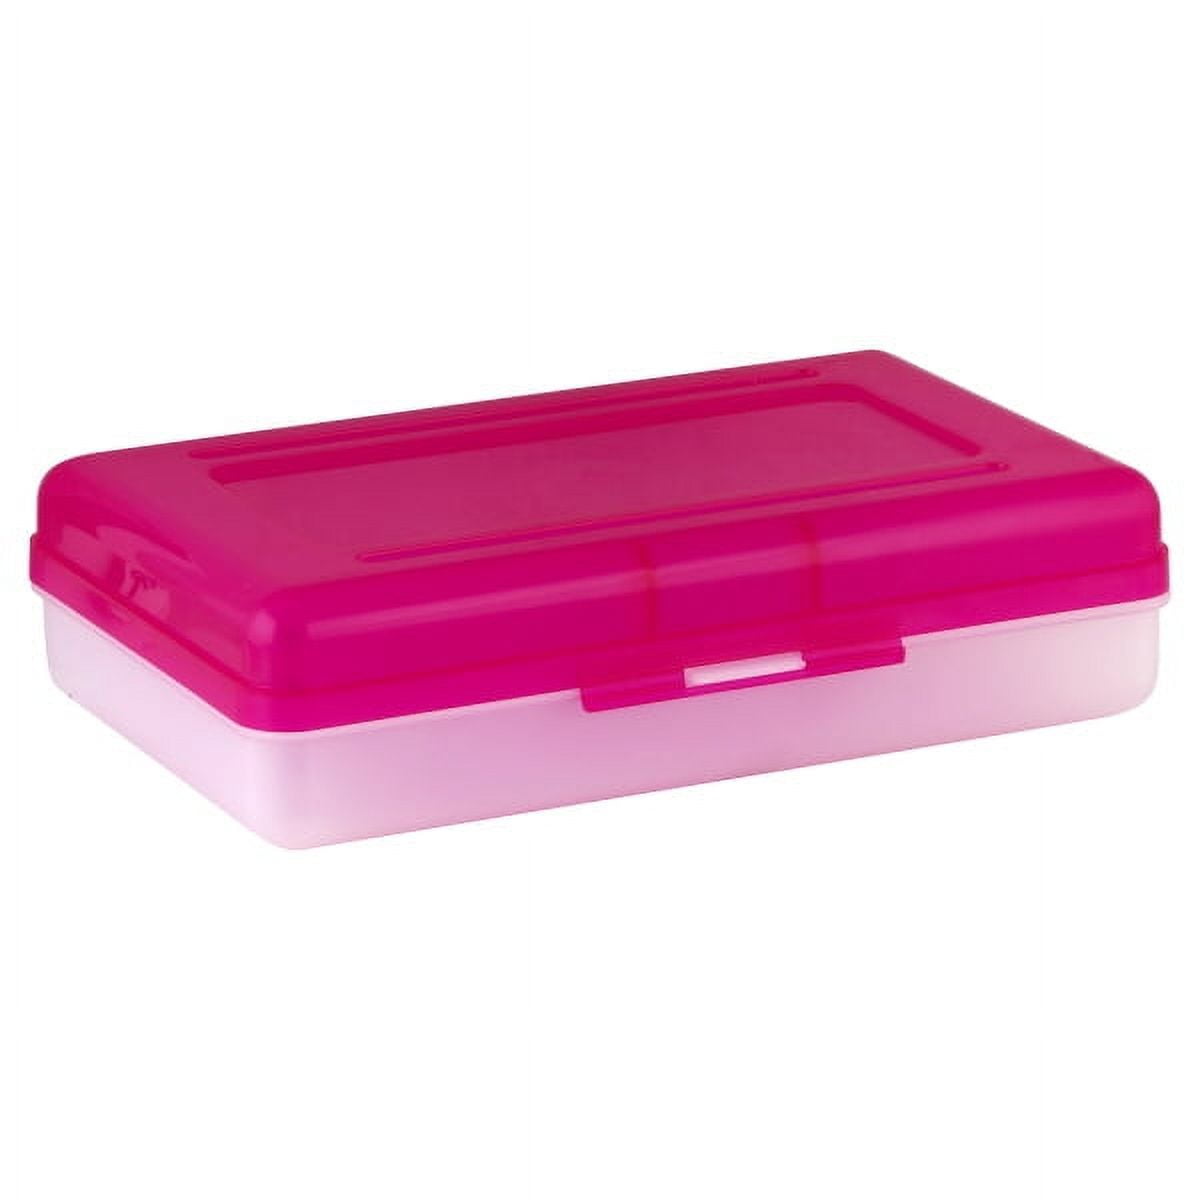 Pink Pencil Boxes - 8.5 L x 5.5 W x 2.5 Hgt.